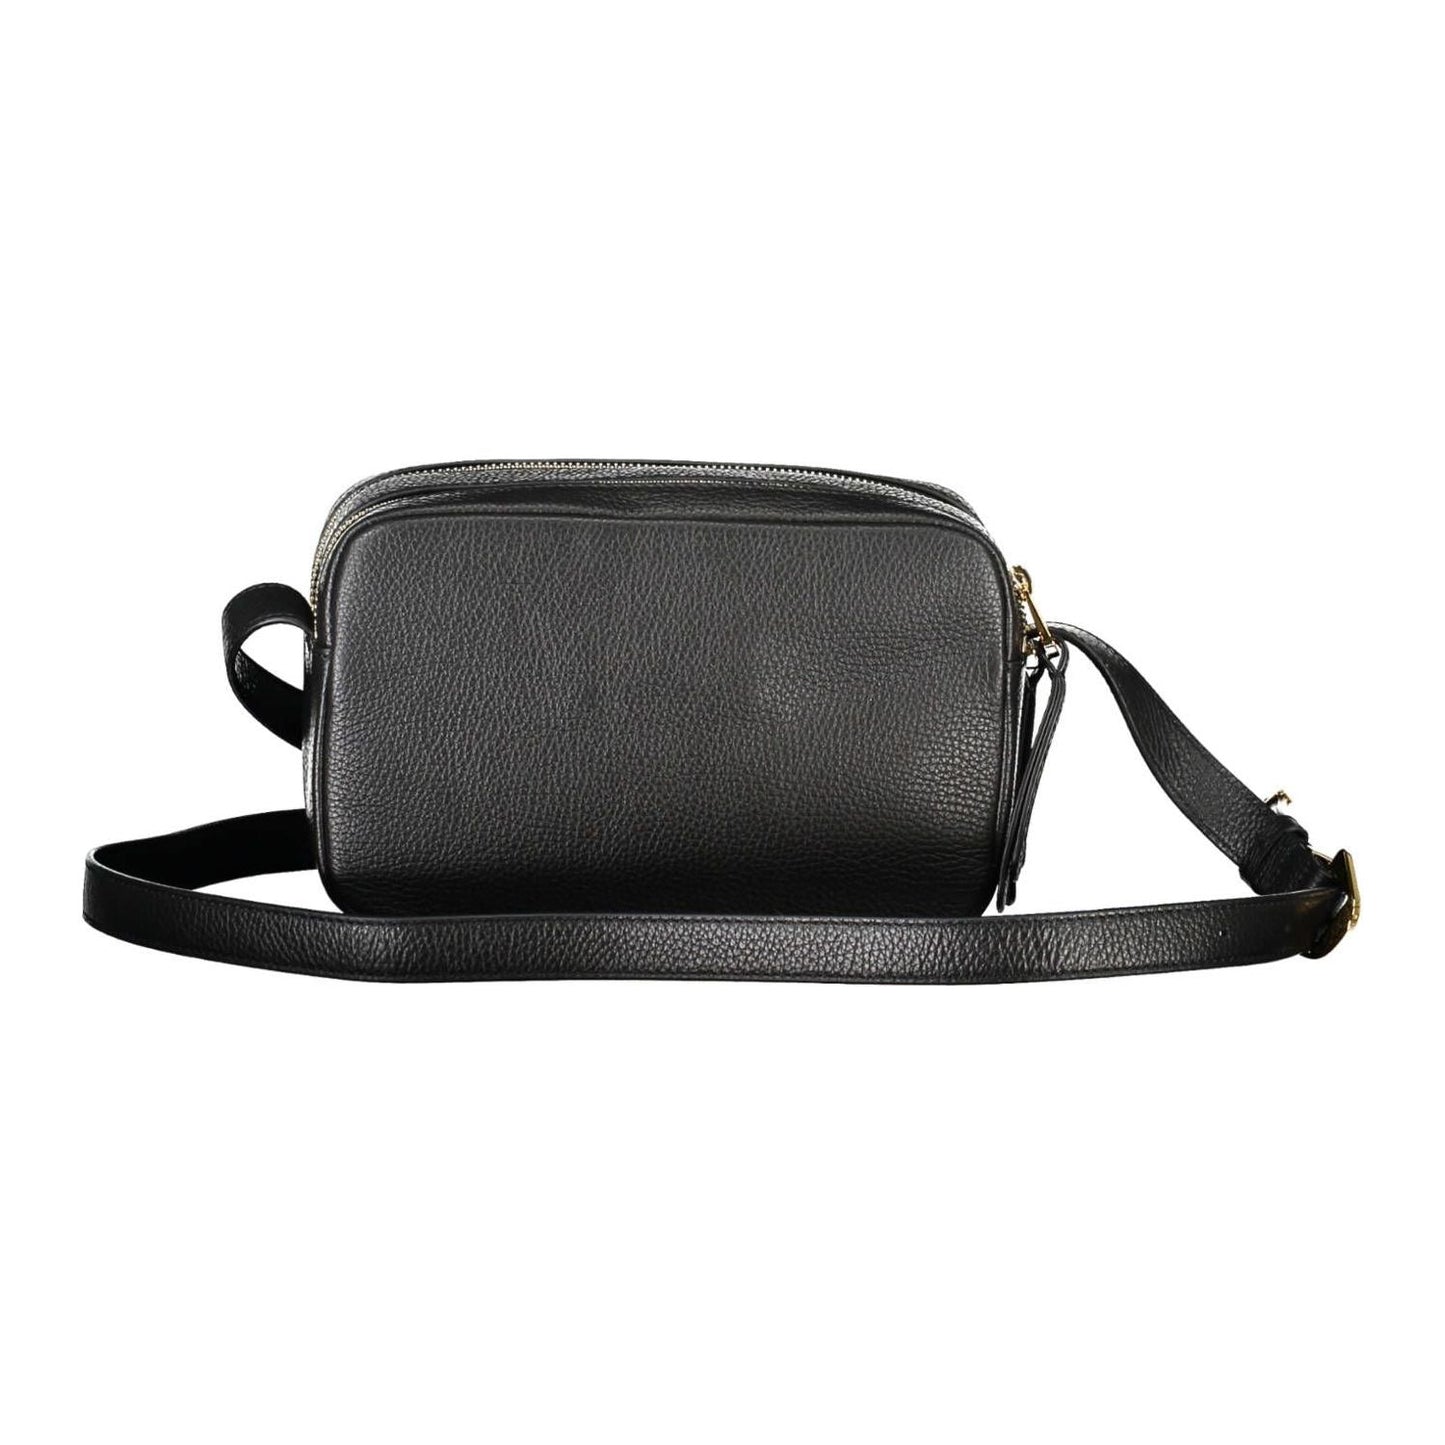 Coccinelle Elegant Black Leather Shoulder Bag with Logo elegant-black-leather-shoulder-bag-with-logo